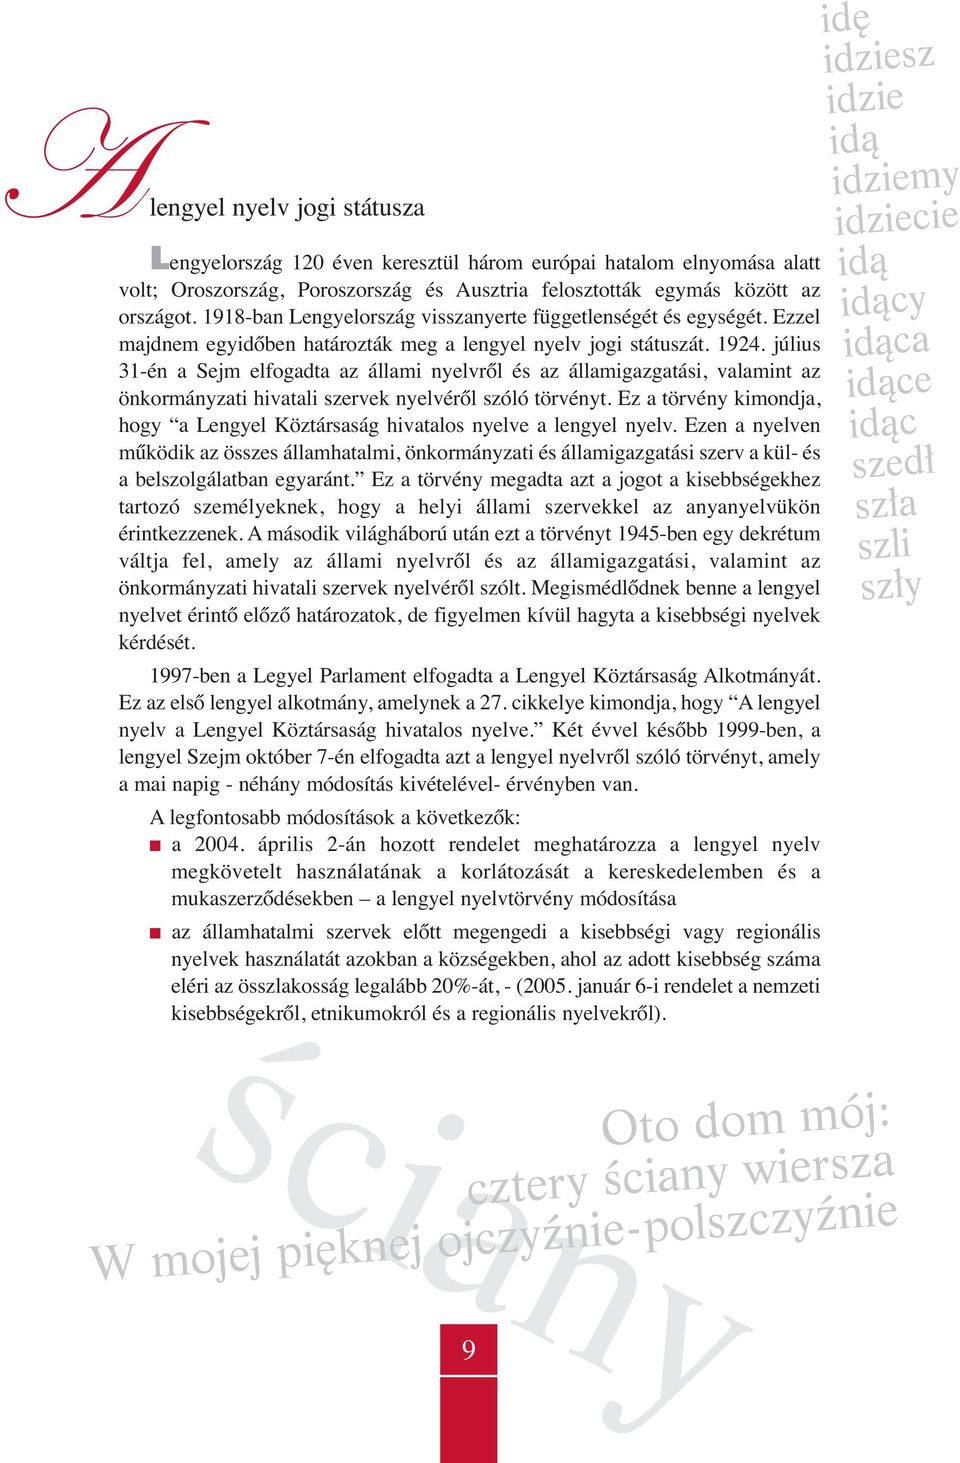 július 31-én a Sejm elfogadta az állami nyelvről és az államigazgatási, valamint az önkormányzati hivatali szervek nyelvéről szóló törvényt.